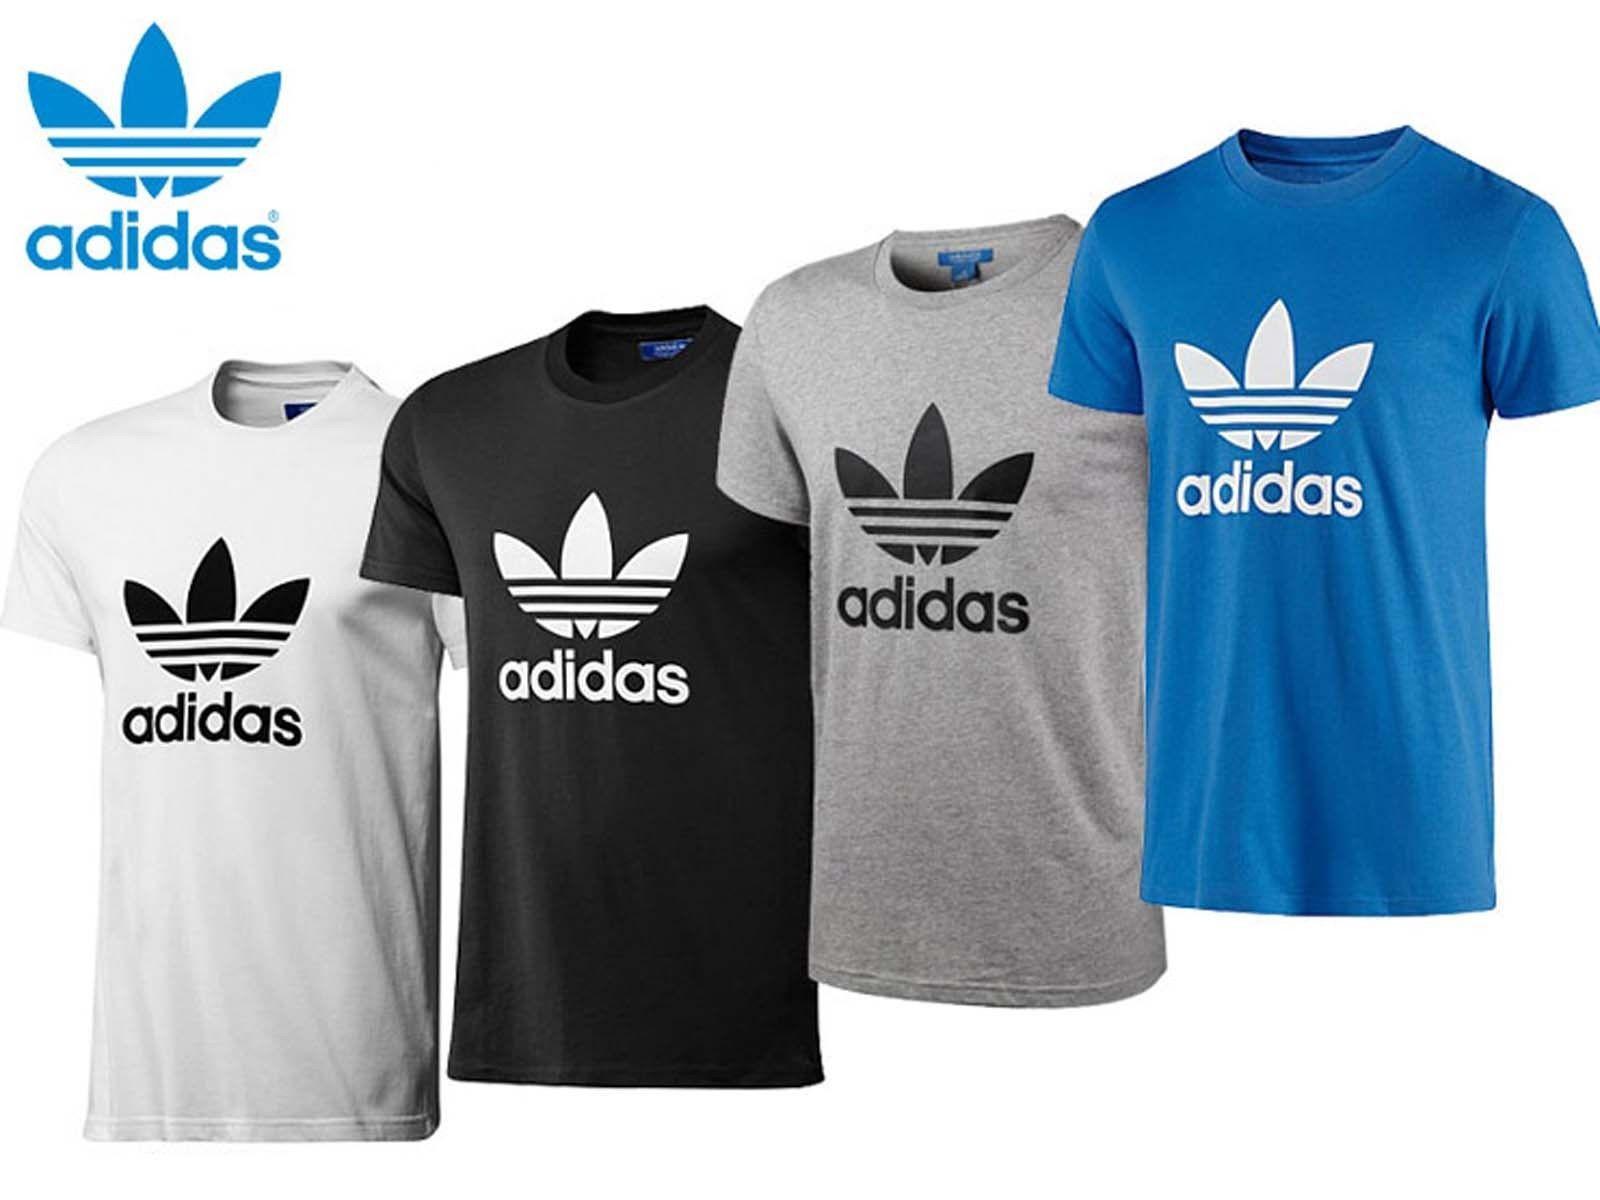 Adidas Originals Trefoil Logo - Versatile Colours Adidas Matchcourt Camo Mens Originals Adidas Stan ...